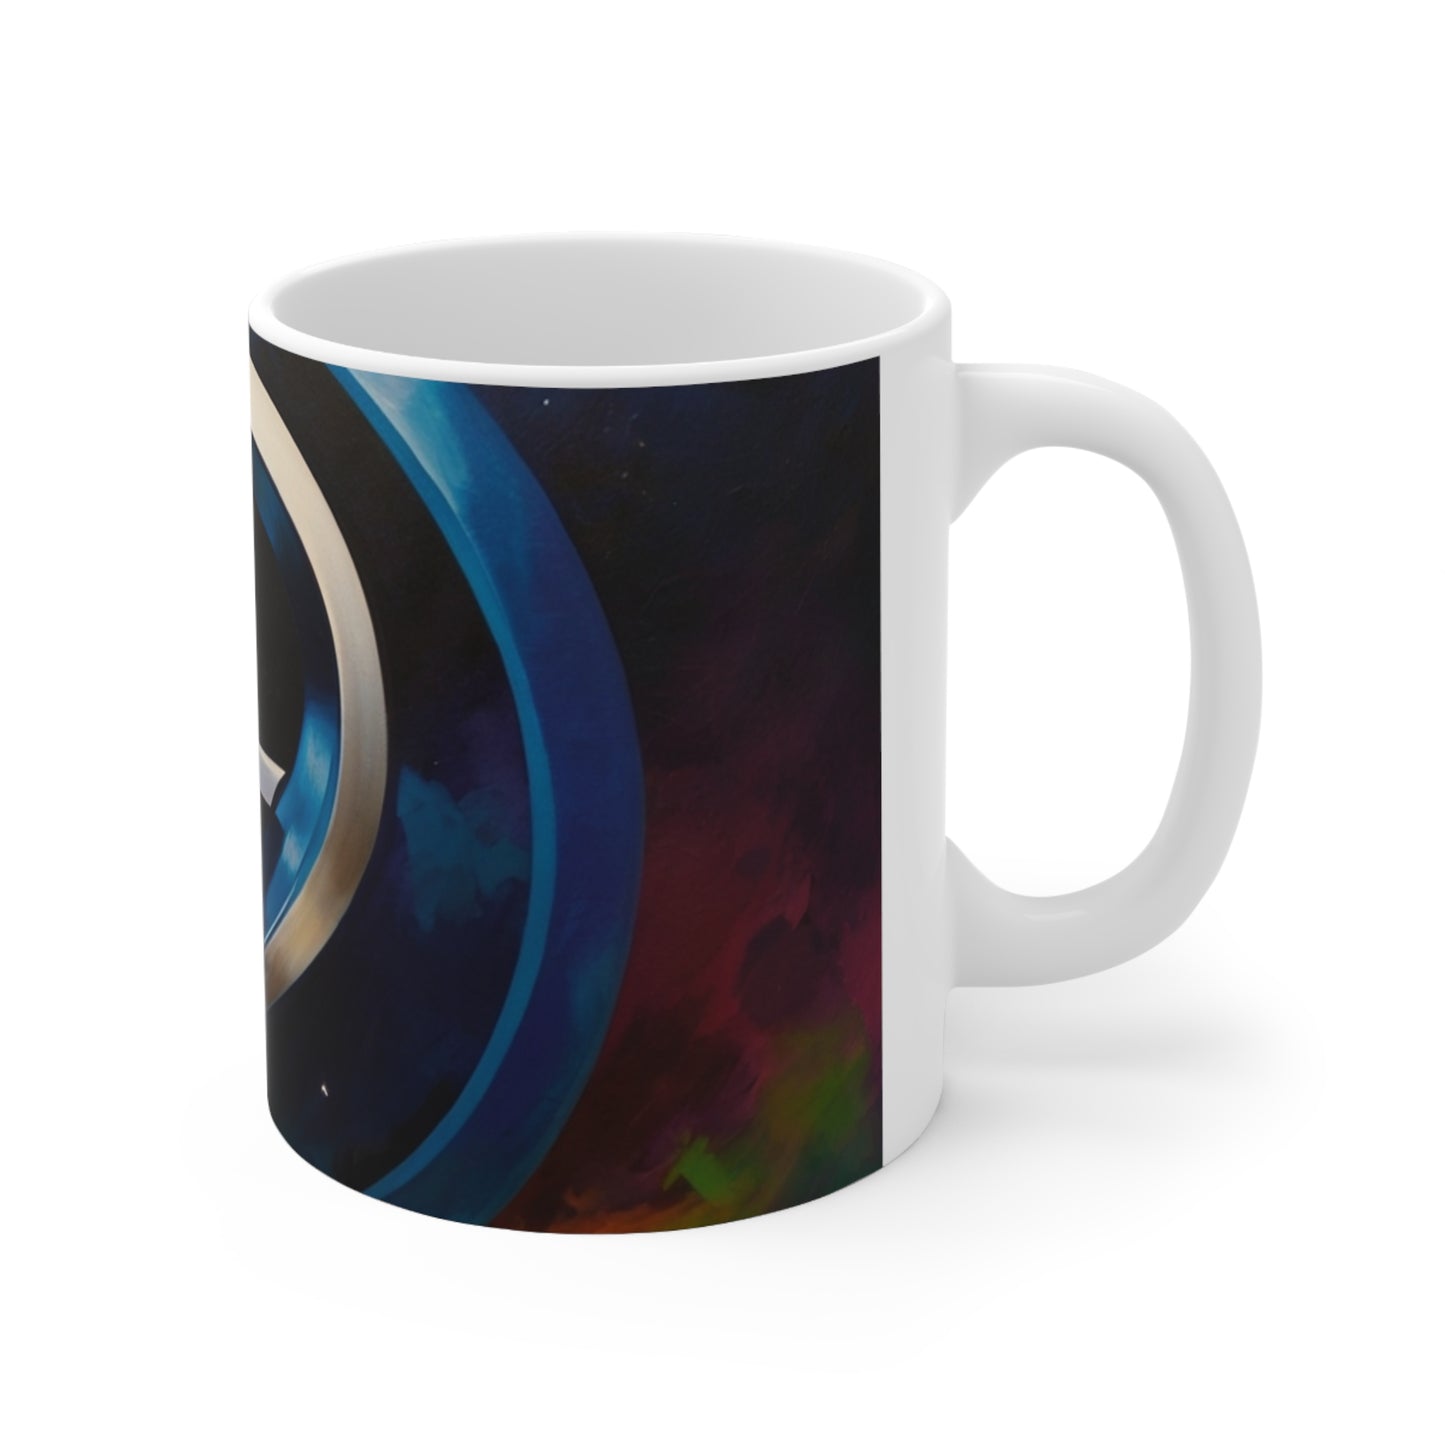 Chrome Fantastic Four Logo Mug - Ceramic Coffee Mug 11oz